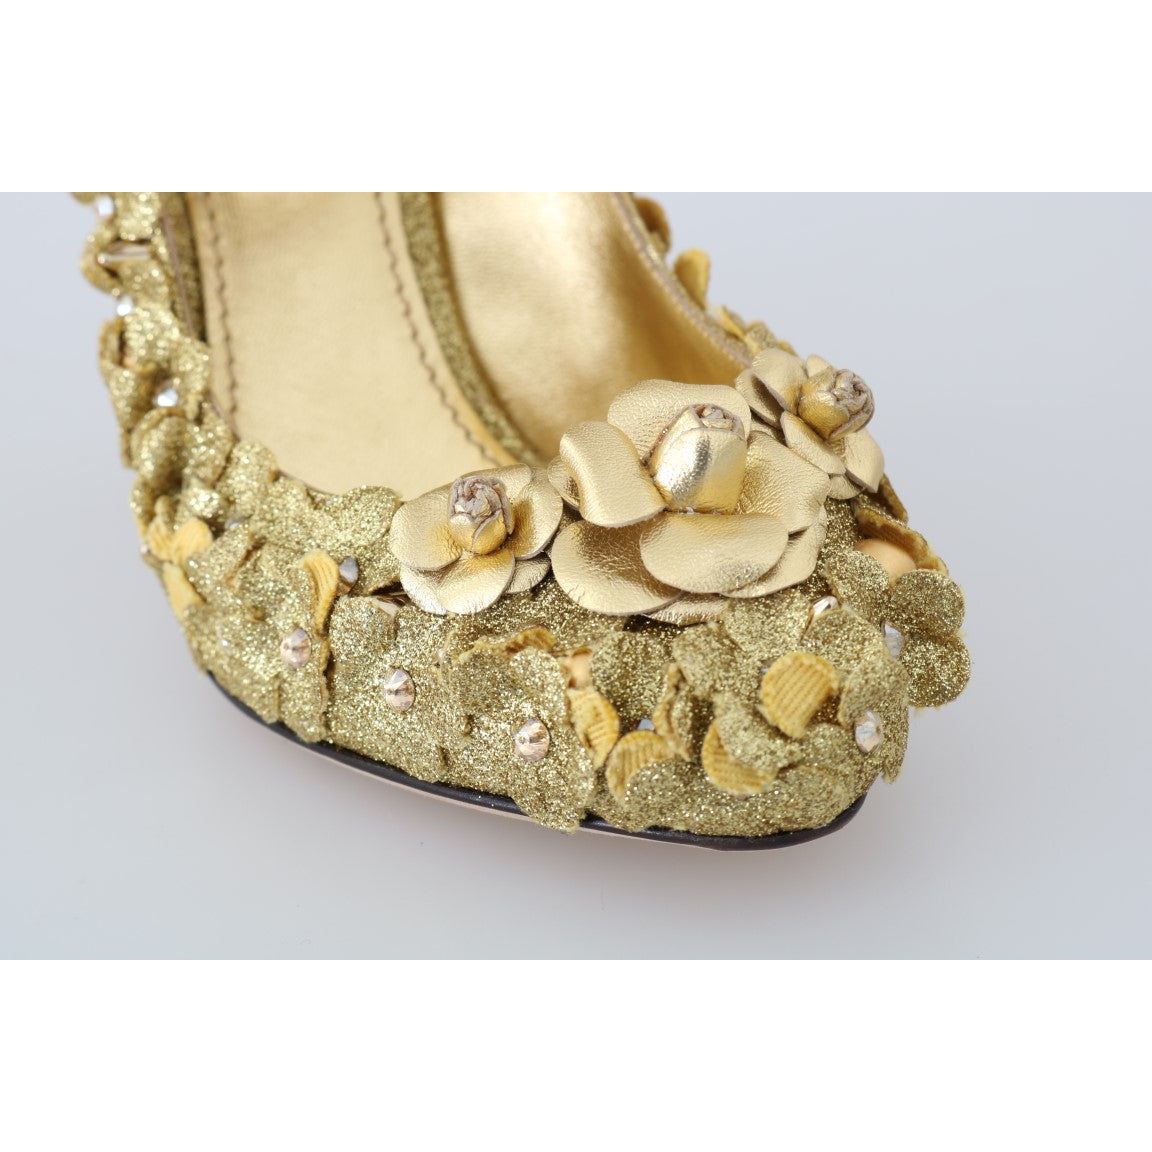 Dolce & Gabbana Gold Floral Crystal Embellished Pumps gold-floral-crystal-mary-janes-pumps 507596-gold-floral-crystal-mary-janes-pumps-5.jpg